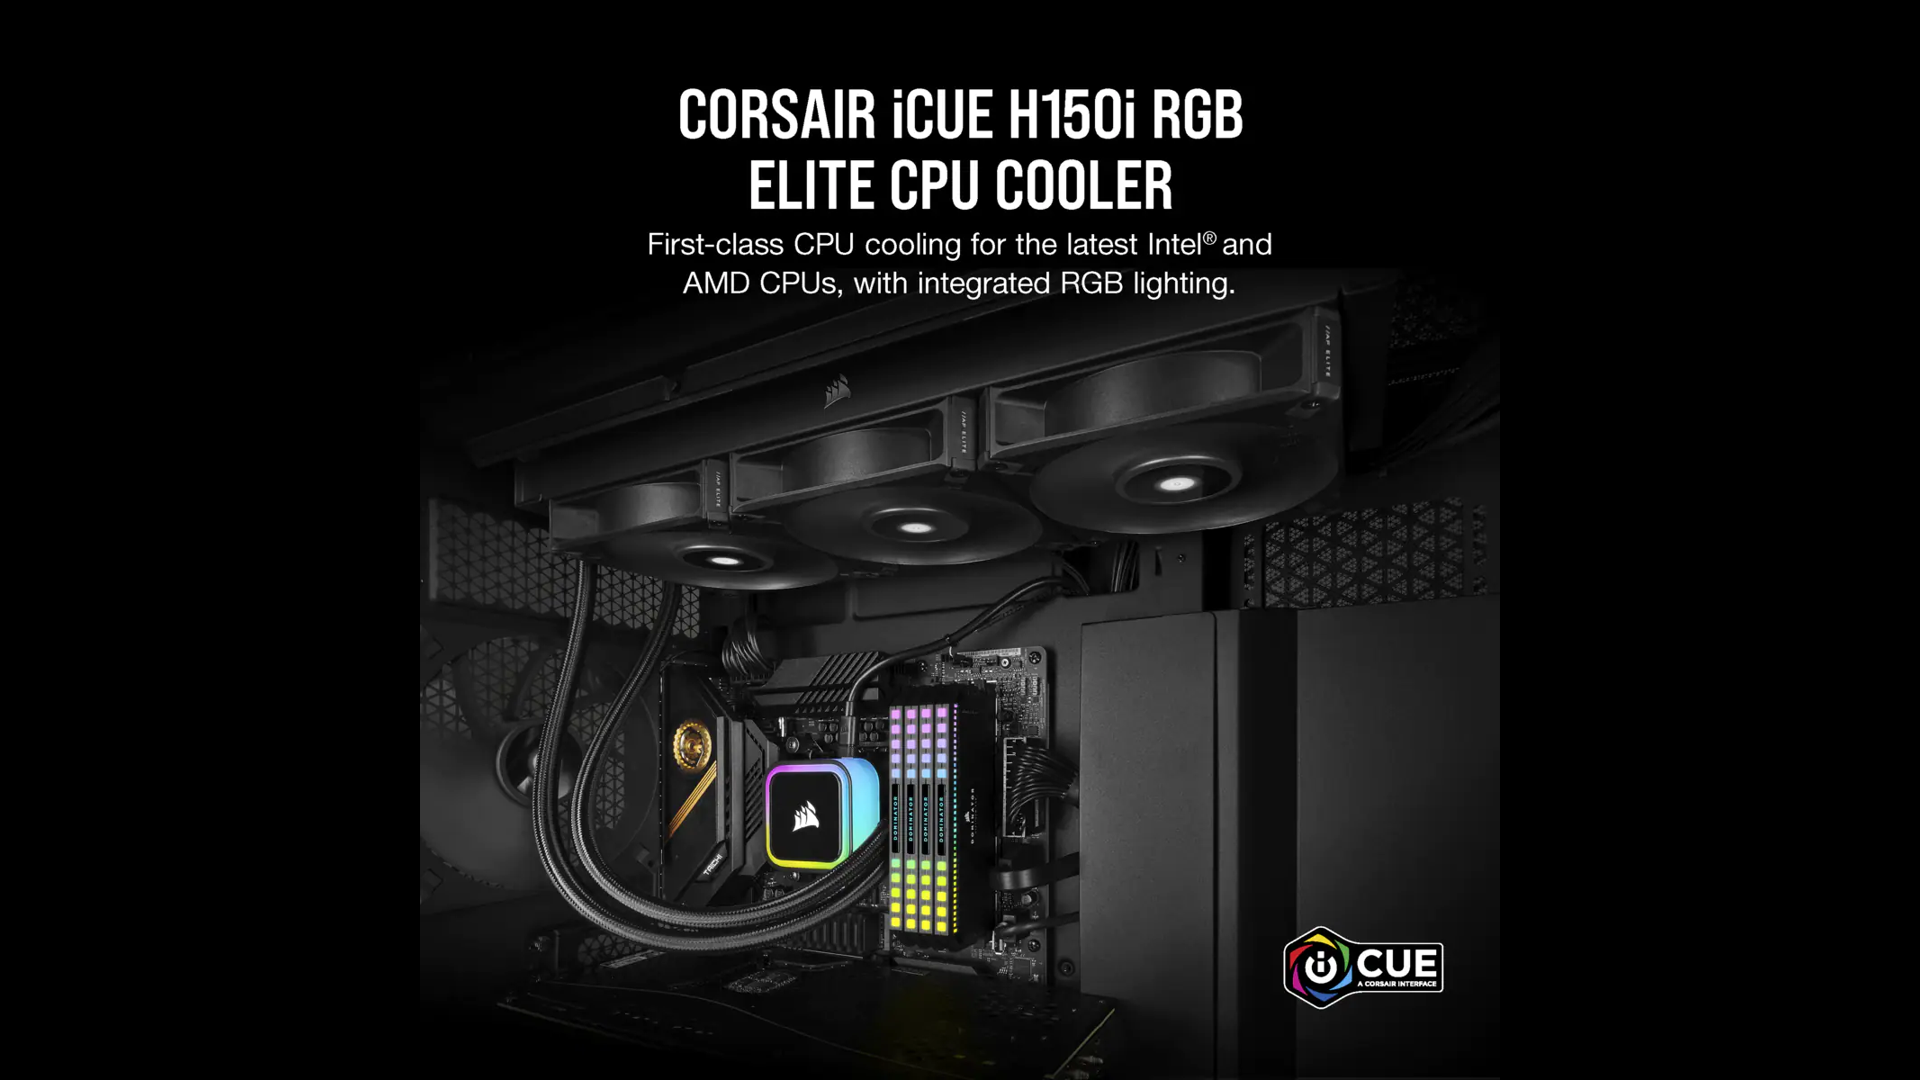 CORSAIR iCUE H150i RGB ELITE LIQUID 360mm RADIATOR LIQUID CPU COOLER